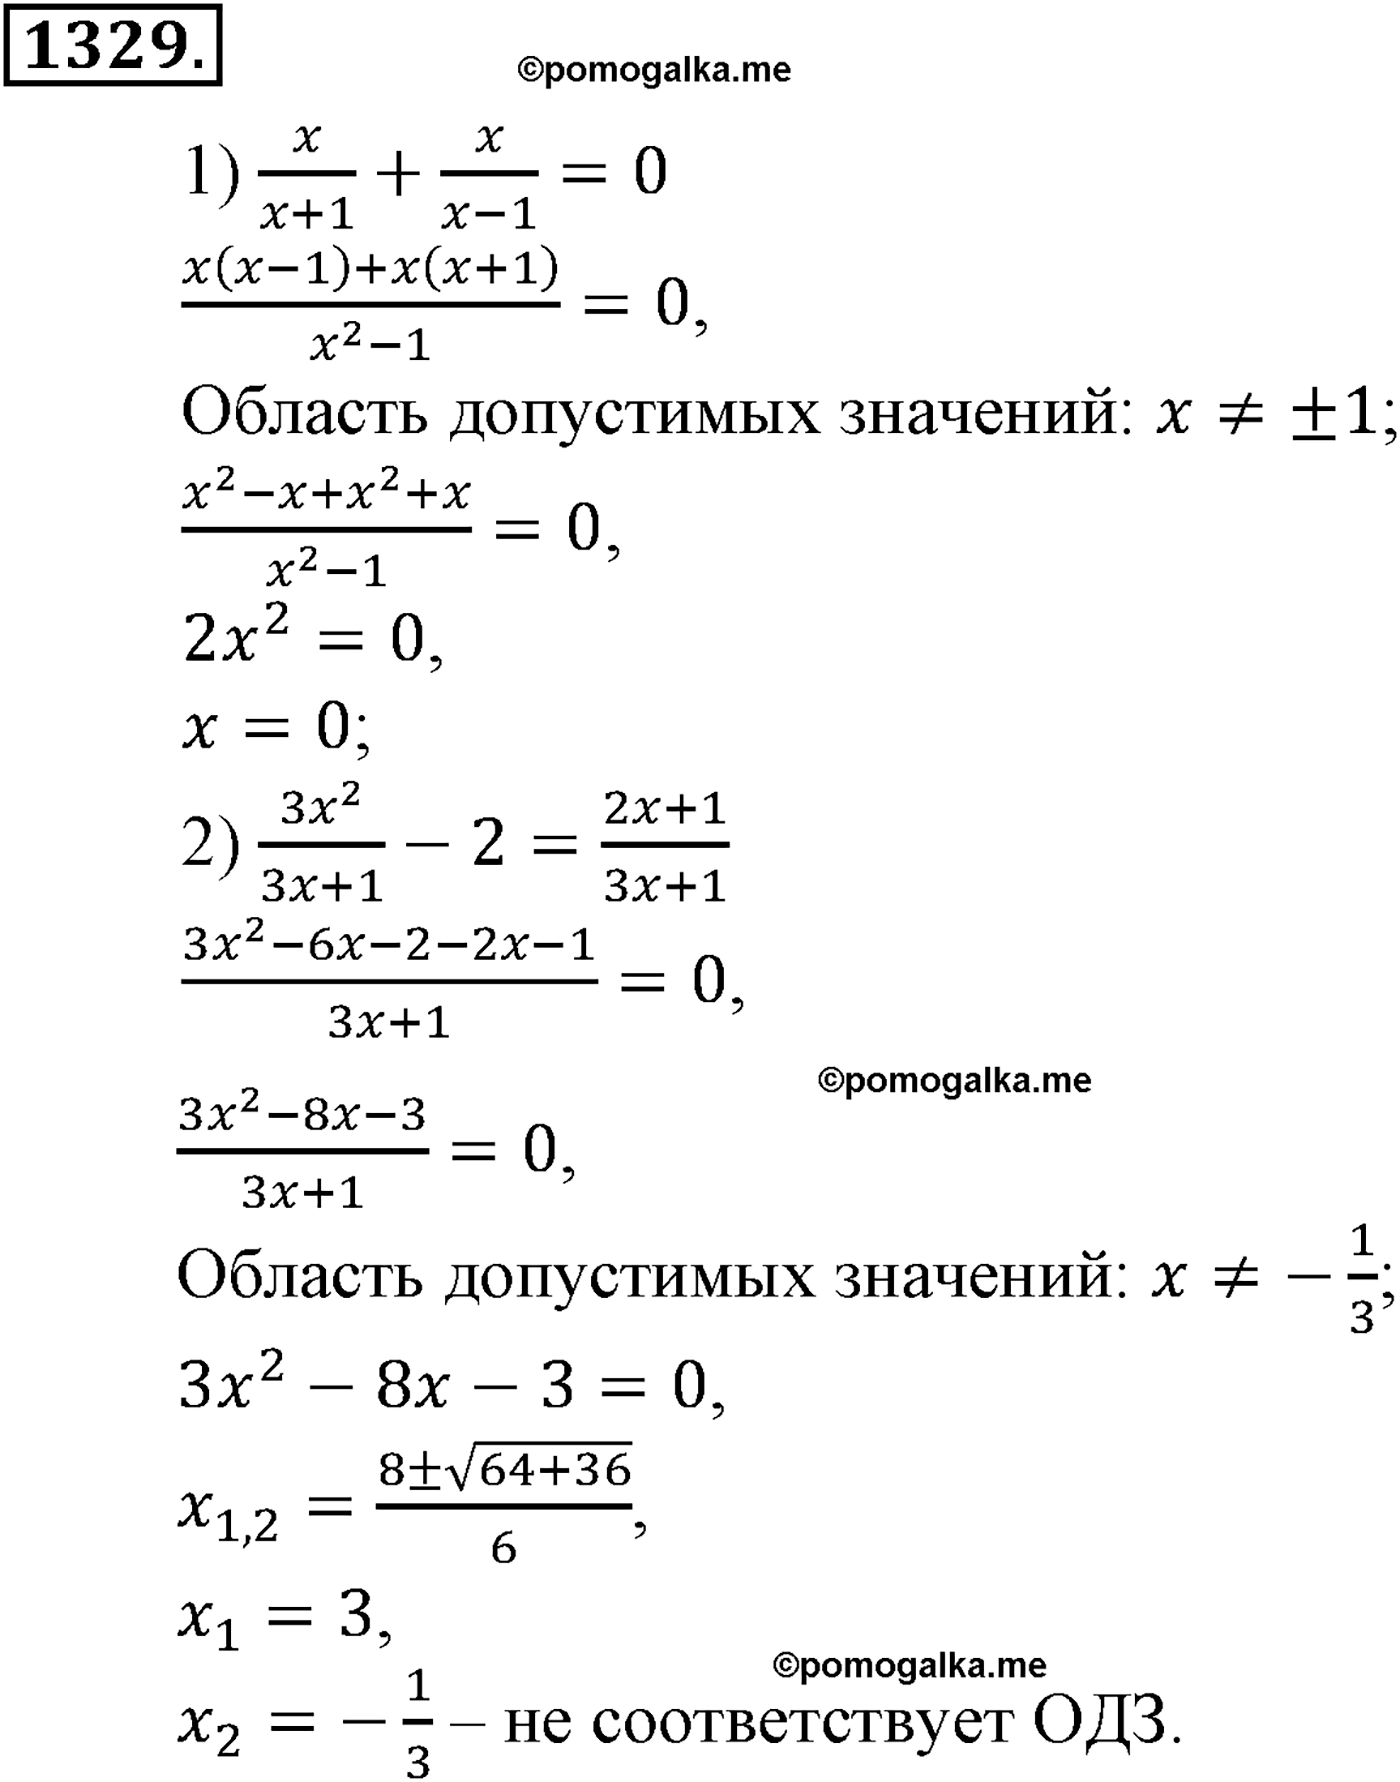 разбор задачи №1329 по алгебре за 10-11 класс из учебника Алимова, Колягина